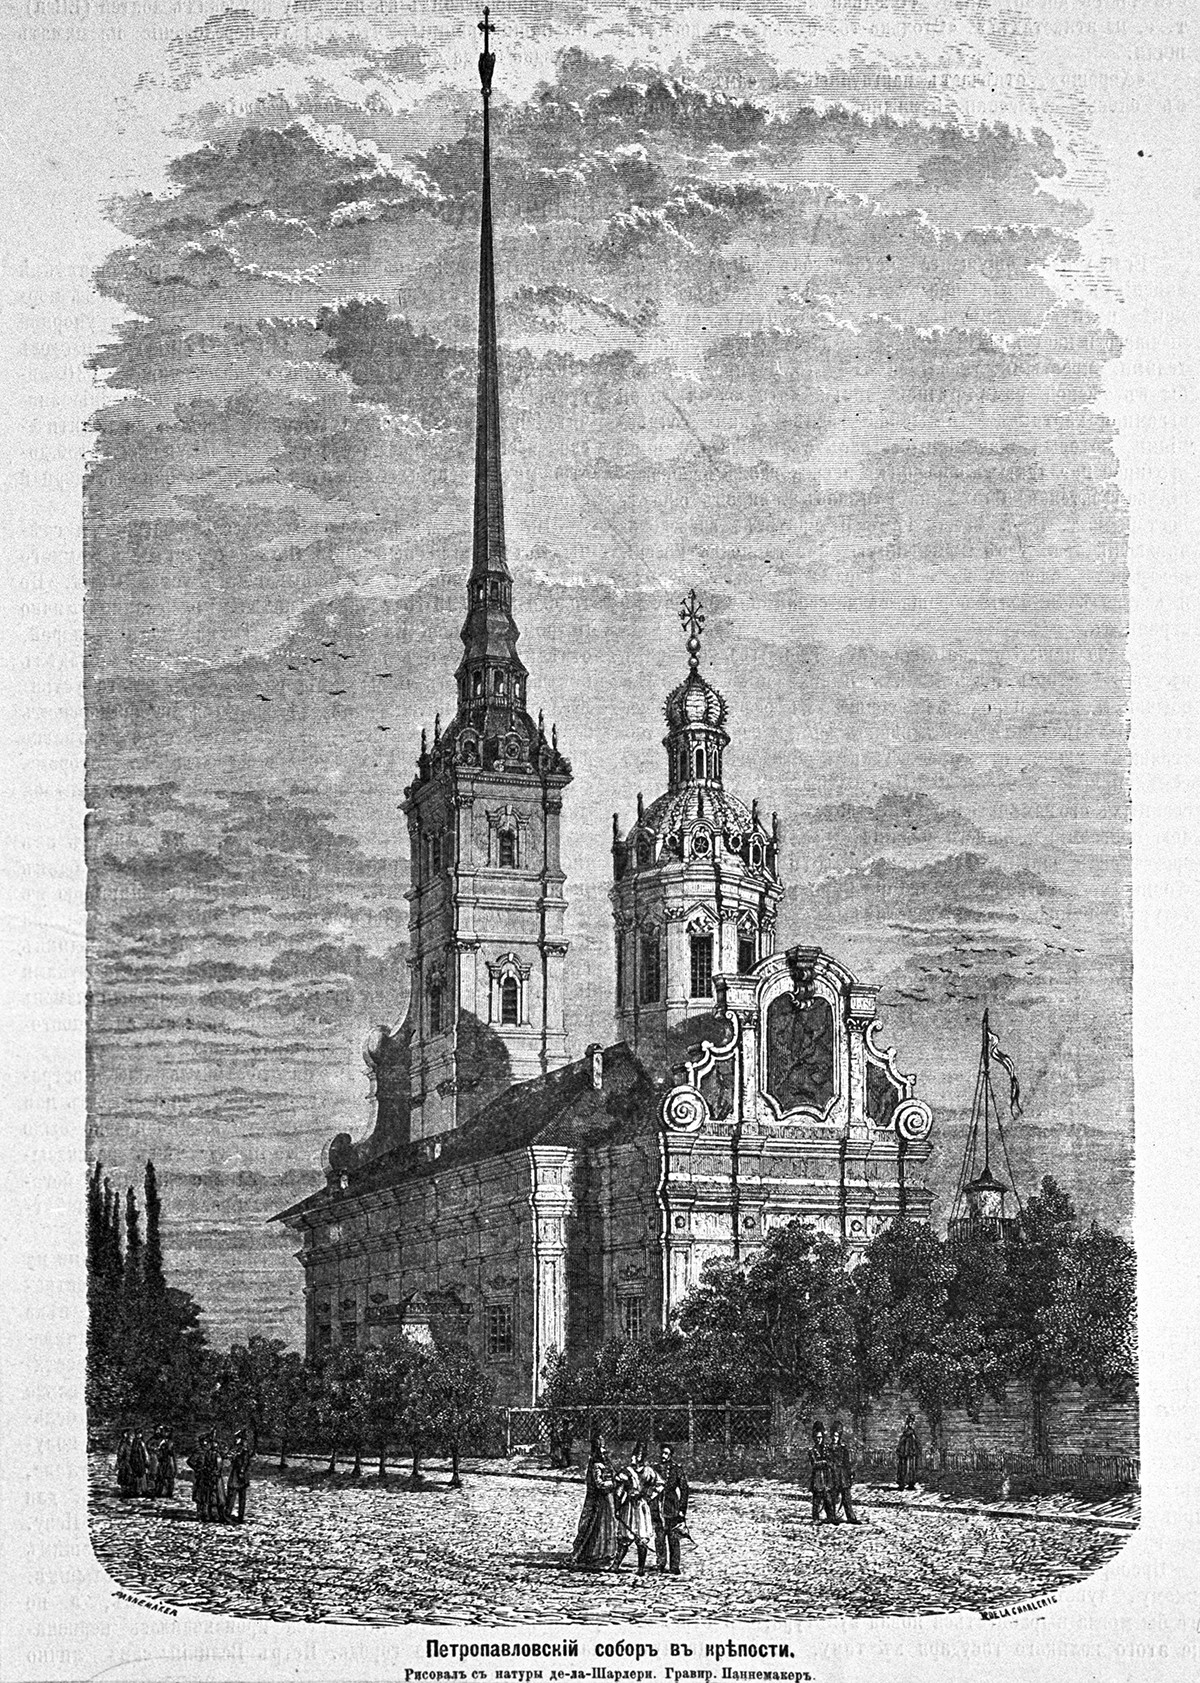 Die Peter-und-Paul-Kathedrale in der Peter-und-Paul-Festung, St. Petersburg. Nekropole der russischen Kaiser.